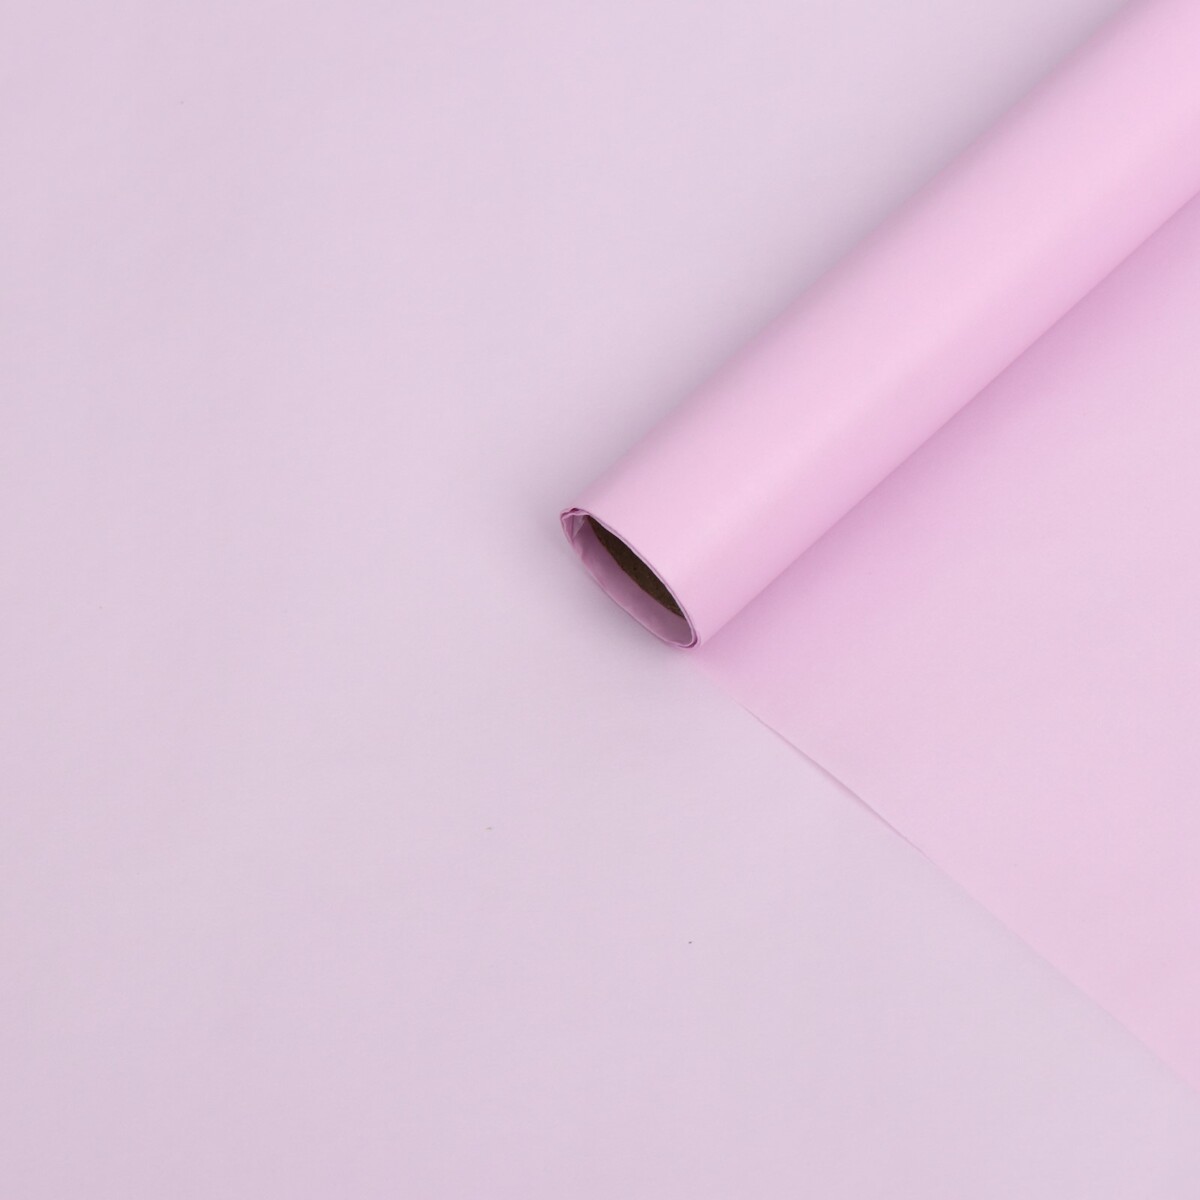 Бумага тишью водоотталкивающая, цвет светло-розовый, 58 см х 5 м 19 микрон